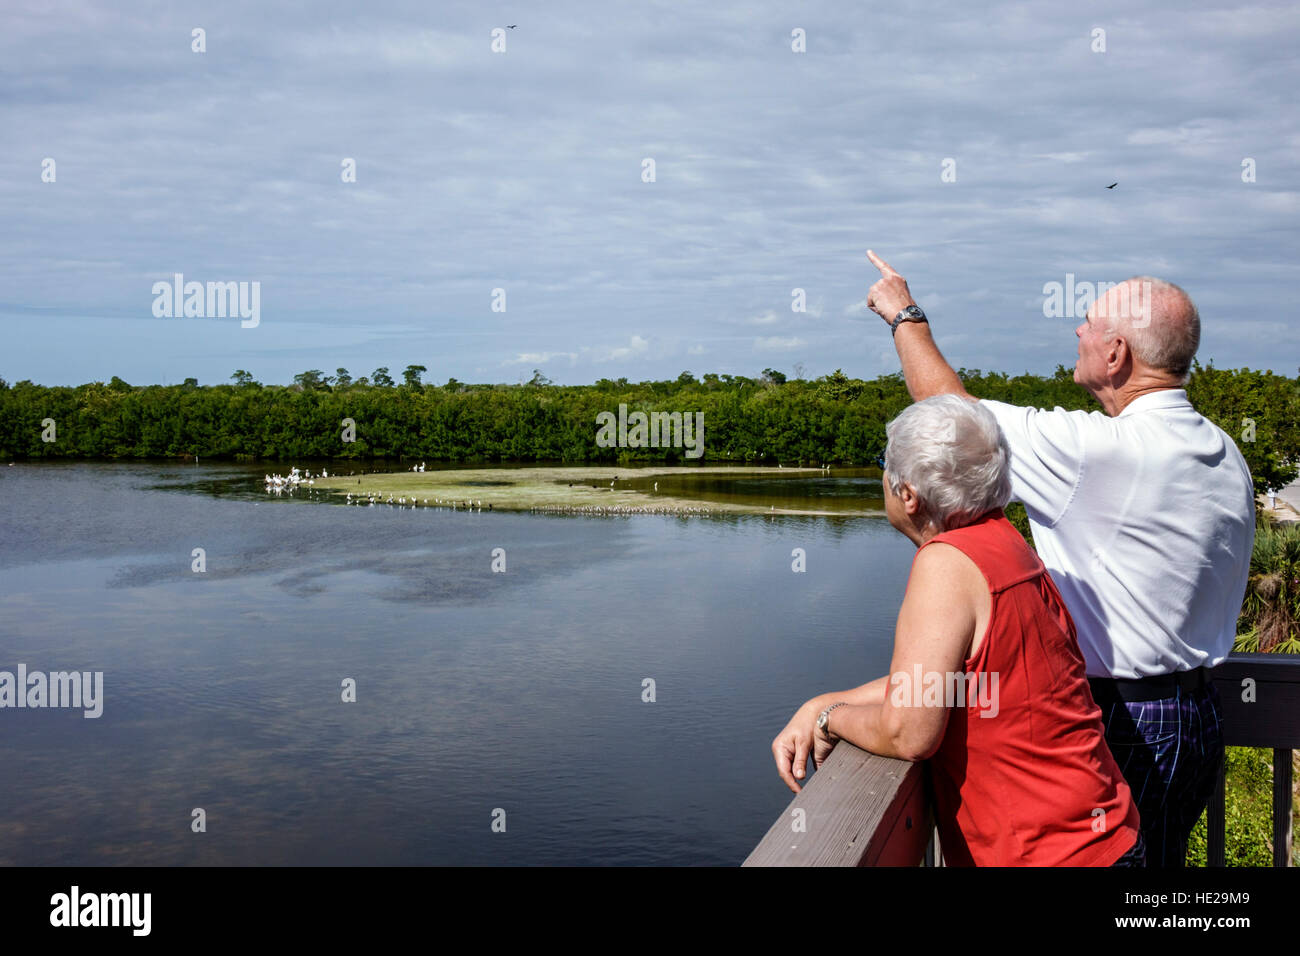 Florida Sanibel Island, J. N. J. N. JN Ding Darling National Wildlife refuge, seniors citoyens citoyens, adulte, adultes, homme hommes, femme femme femme wome Banque D'Images